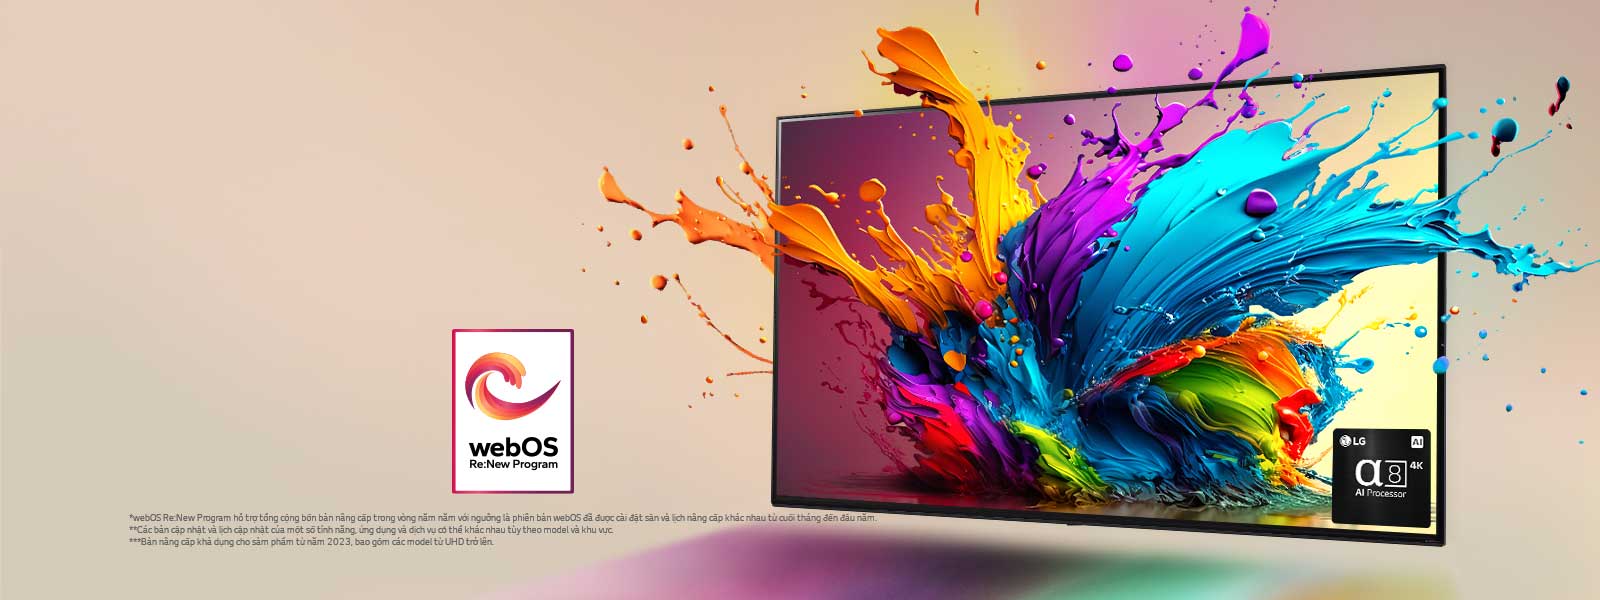 LG QNED TV trên phông nền màu hồng nhạt. Những giọt nước và sóng sơn đầy màu sắc bật lên từ màn hình, ánh sáng tỏa ra, đổ bóng đầy màu sắc bên dưới. Bộ xử lý AI alpha 8 ở góc dưới cùng bên phải màn hình TV.  Logo "webOS Re:New Program" trên hình ảnh. Dòng tuyên bố miễn trừ: "webOS Re:New Program hỗ trợ tổng cộng bốn bản nâng cấp trong vòng năm năm với ngưỡng là phiên bản webOS đã được cài đặt sẵn và lịch nâng cấp khác nhau từ cuối tháng đến đầu năm." "Các bản cập nhật và lịch cập nhật của một số tính năng, ứng dụng và dịch vụ có thể khác nhau tùy theo model và khu vực."  "Bản nâng cấp khả dụng cho sảm phẩm từ năm 2023, bao gồm các model từ UHD trở lên."